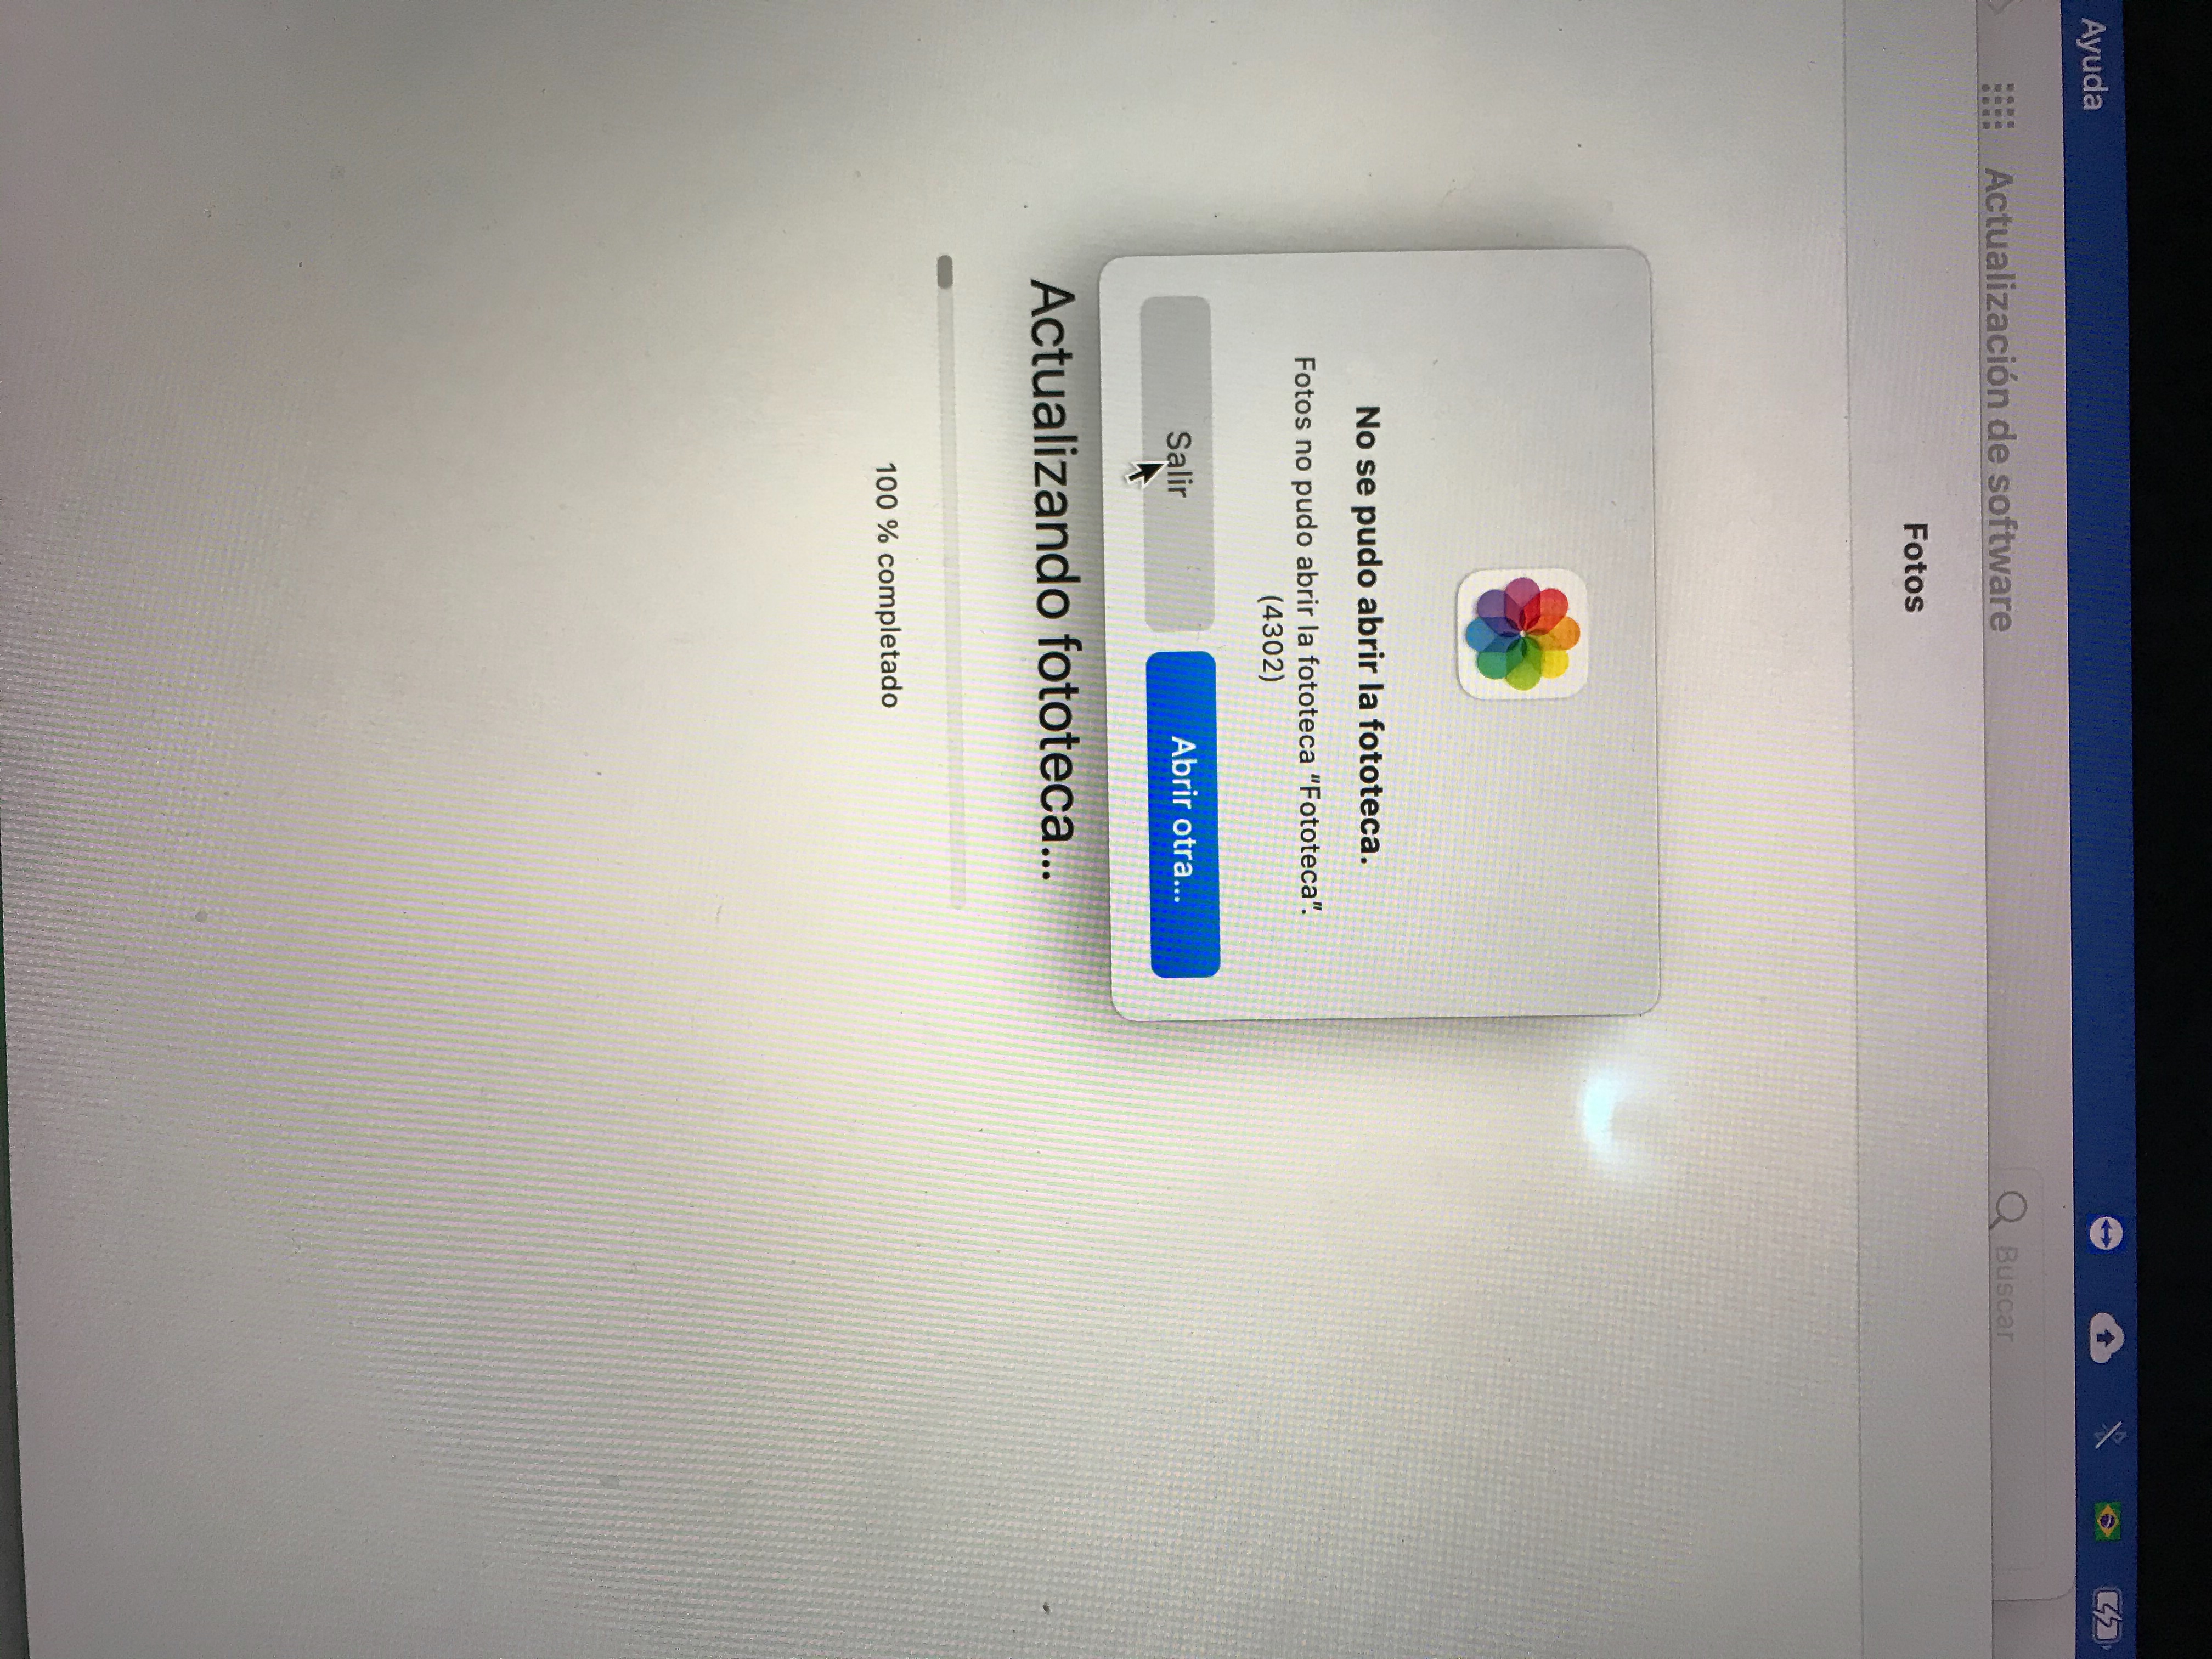 Algumas fotos recentes não abrem no … - Comunidade da Apple